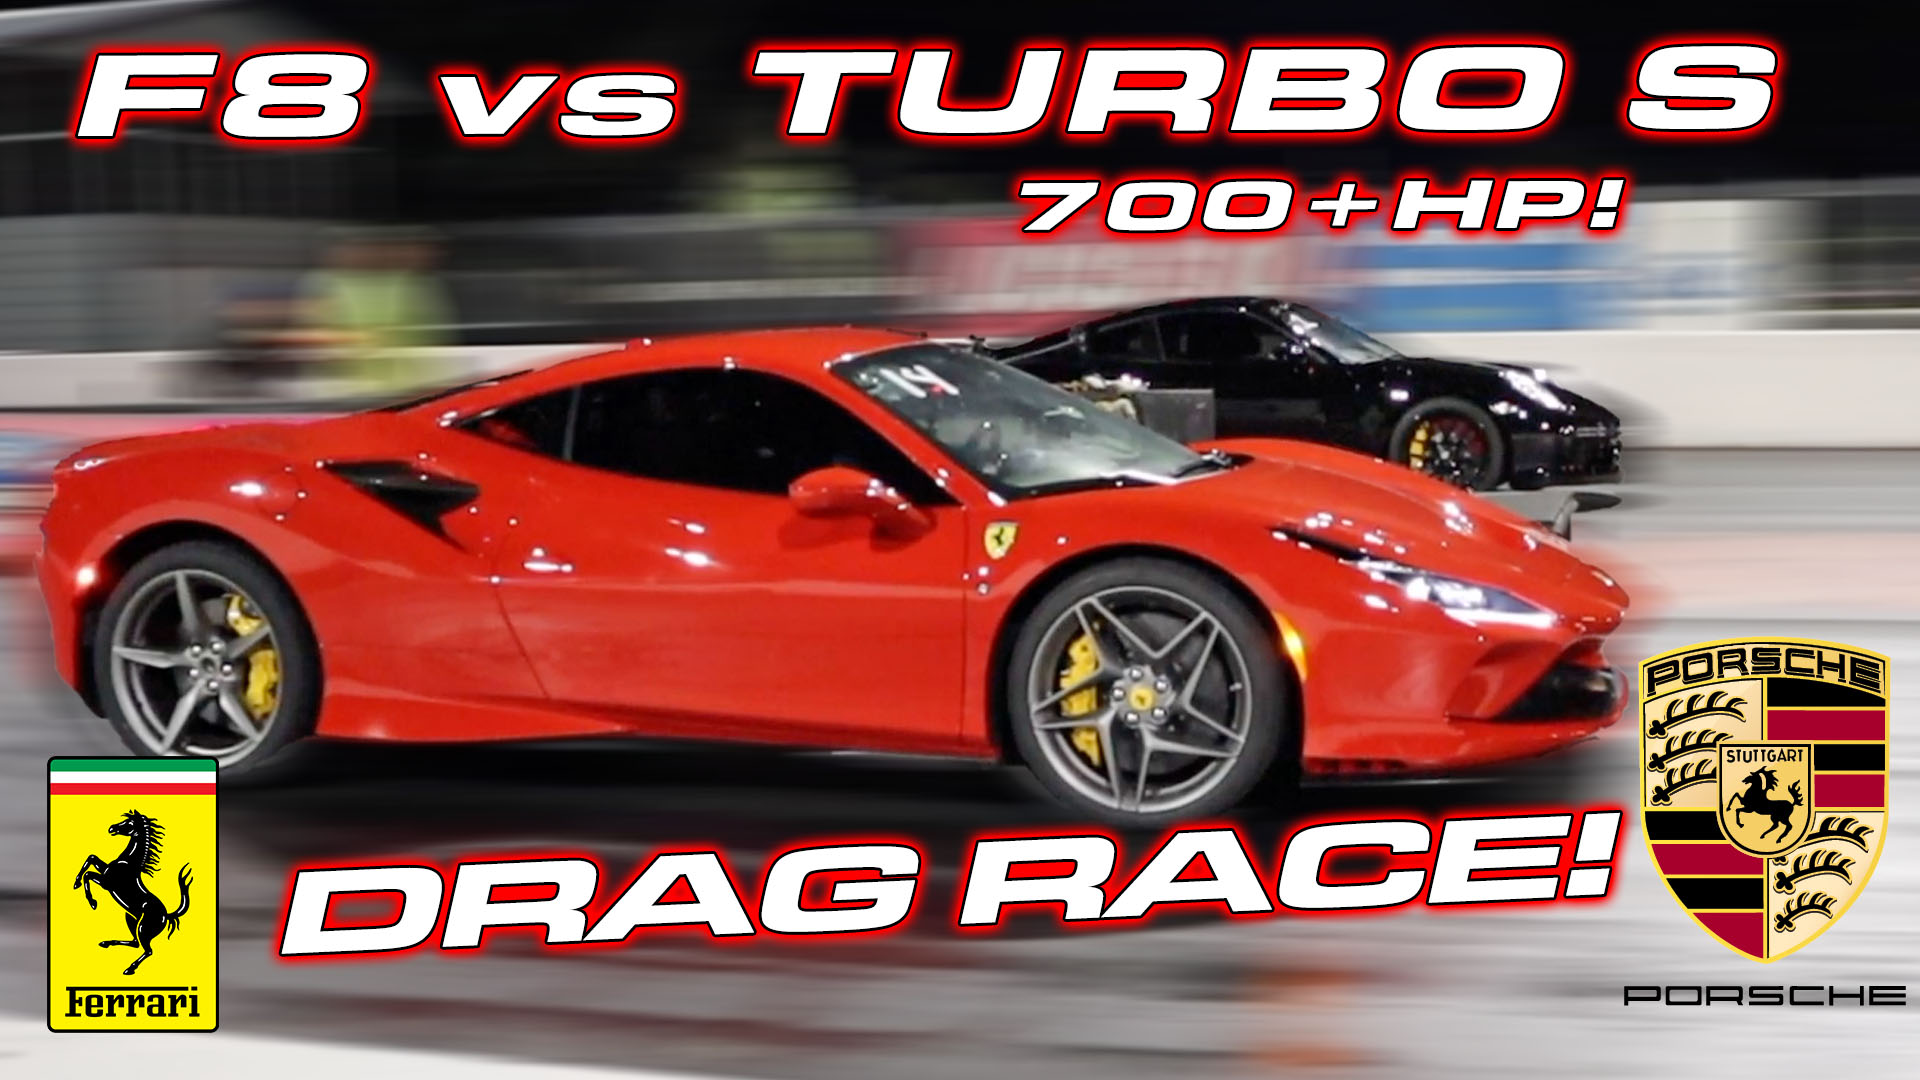 911 Turbo S vs Ferrari F8 Drag Race